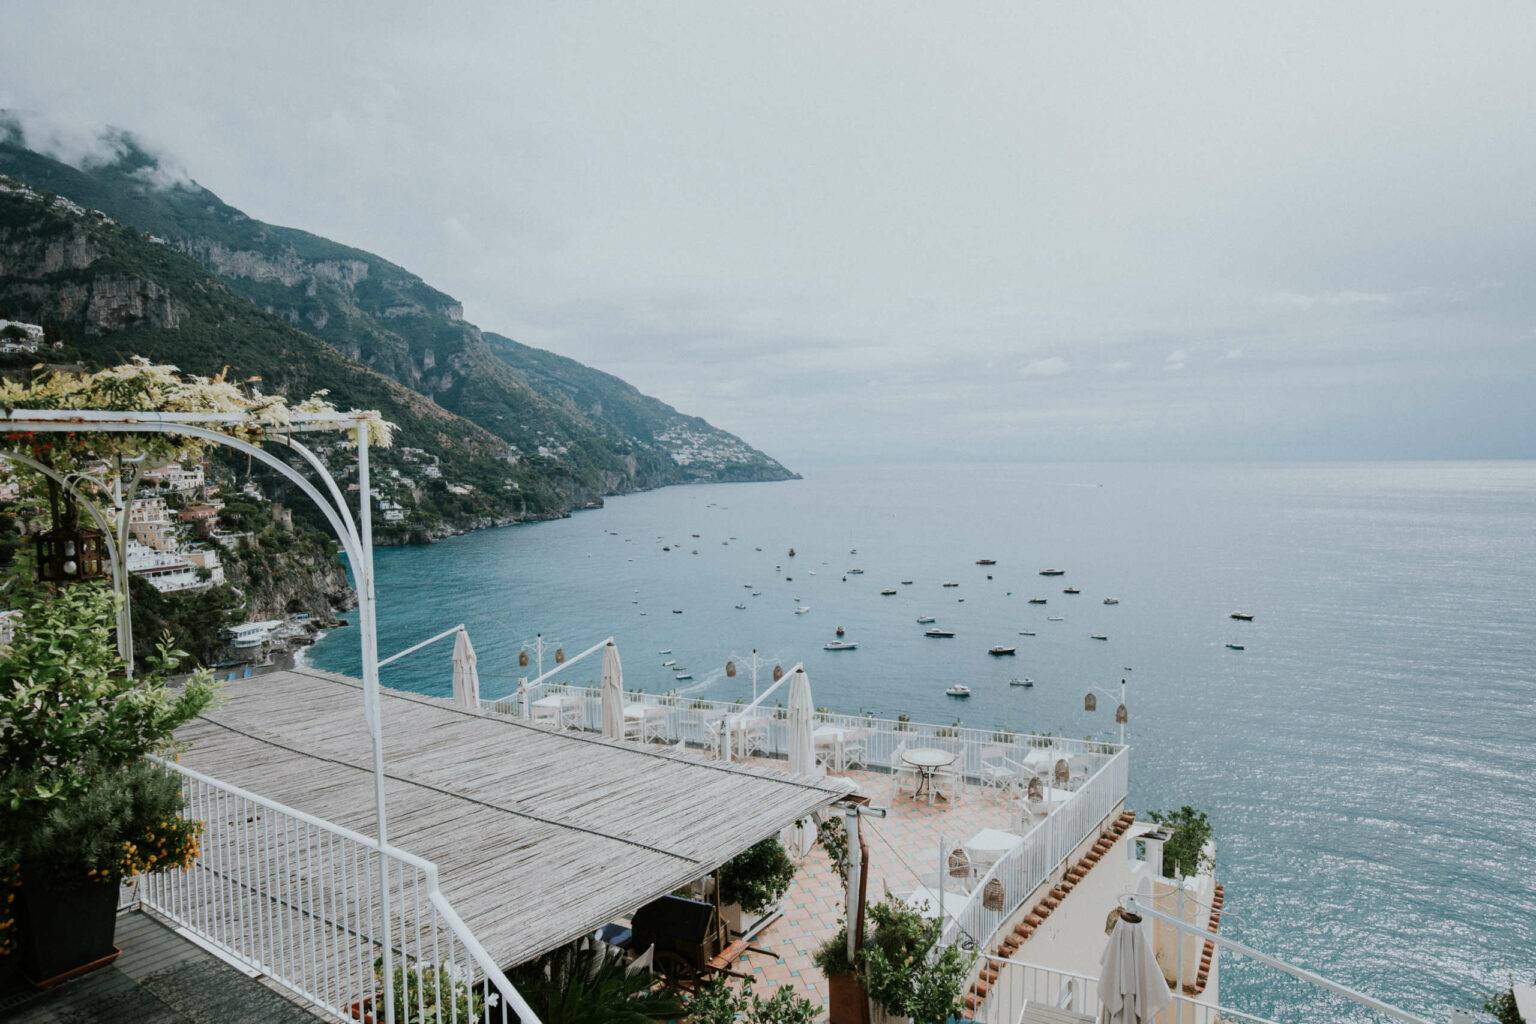 Traumhafte Aussichten: Die Bucht von Positano.